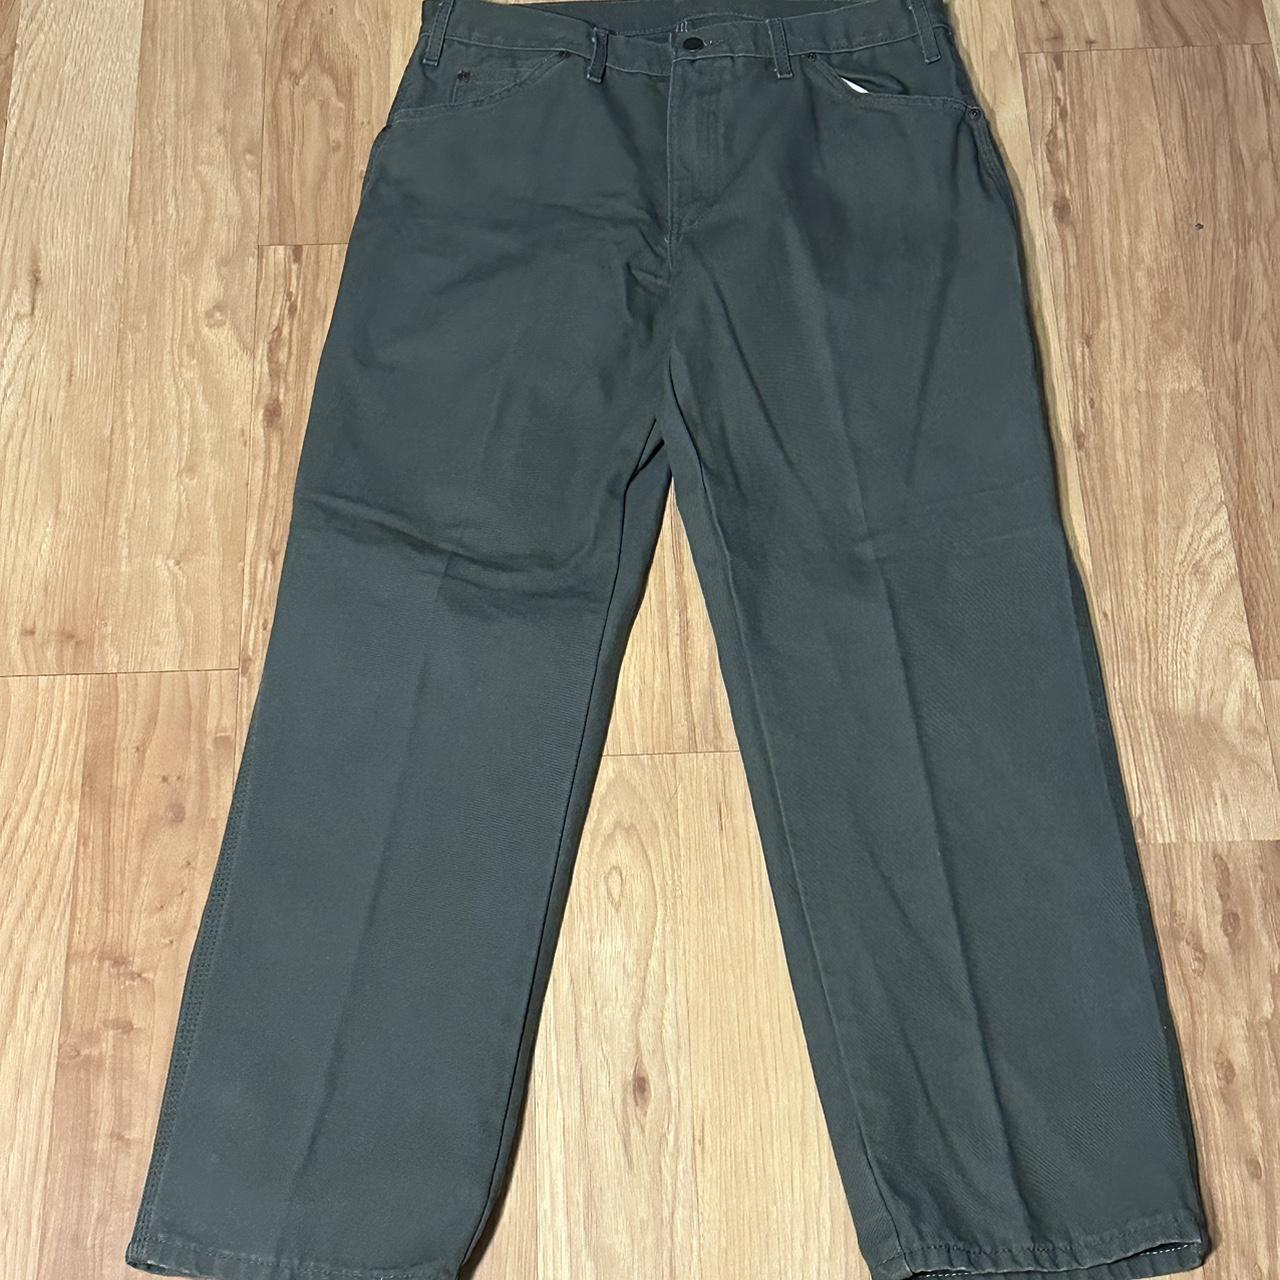 Green Dickea Workwear Pants Size 34x32 - Depop